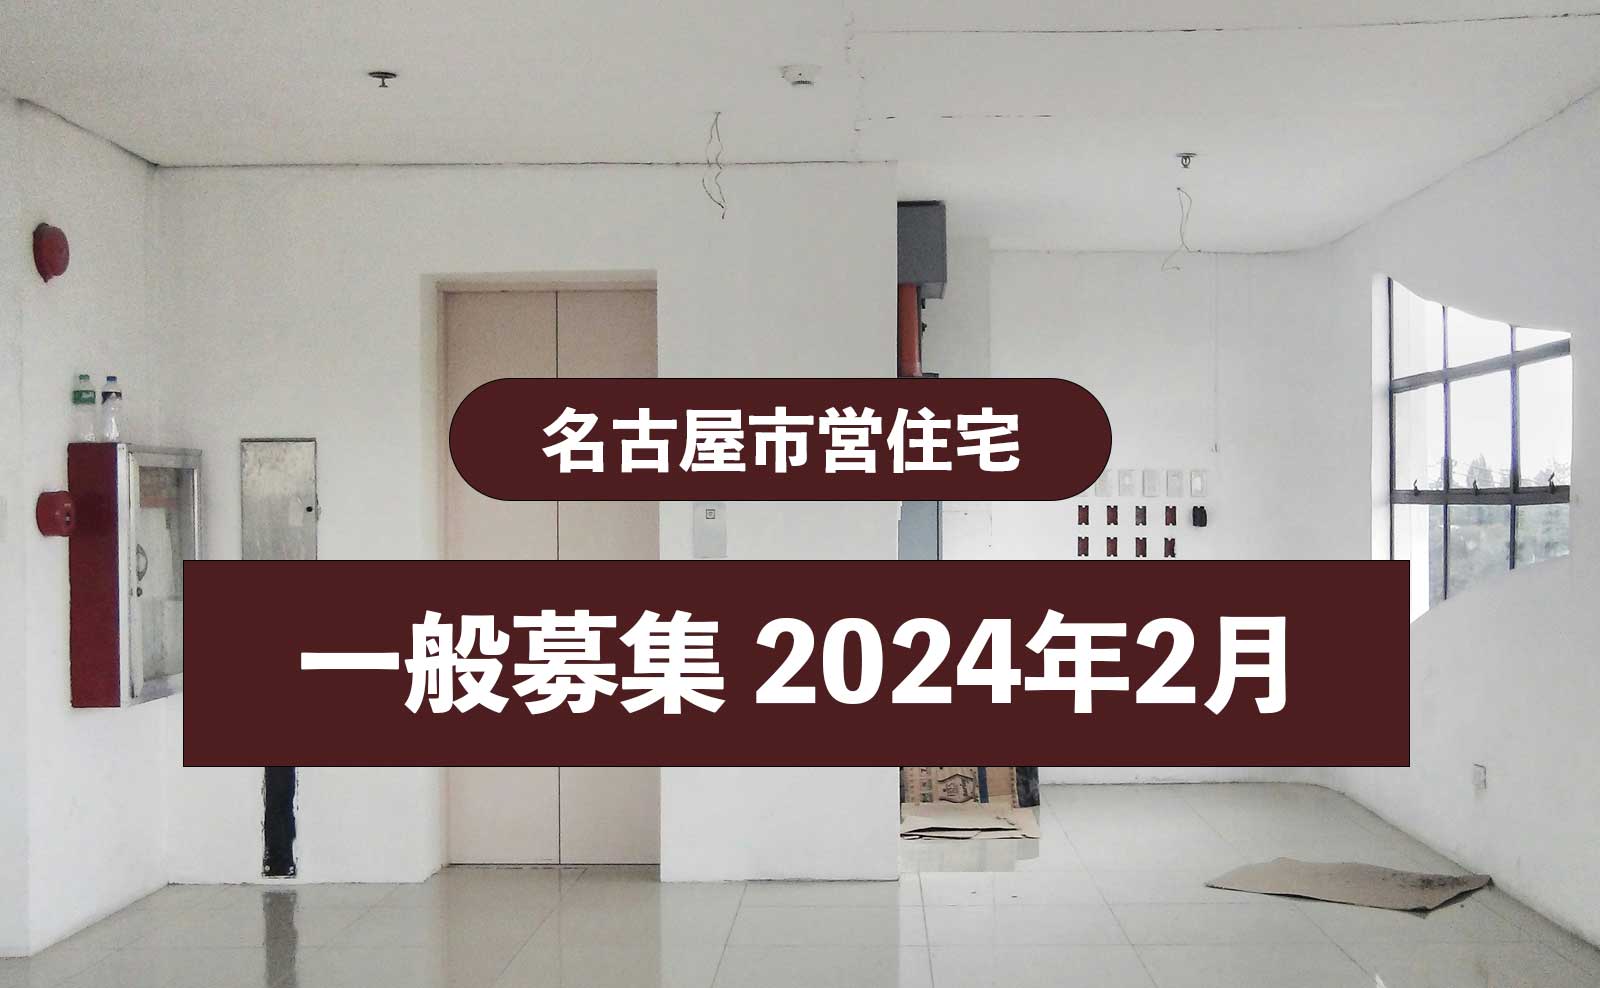 【募集情報】名古屋市営住宅の一般募集 第4回について（2024年2月）